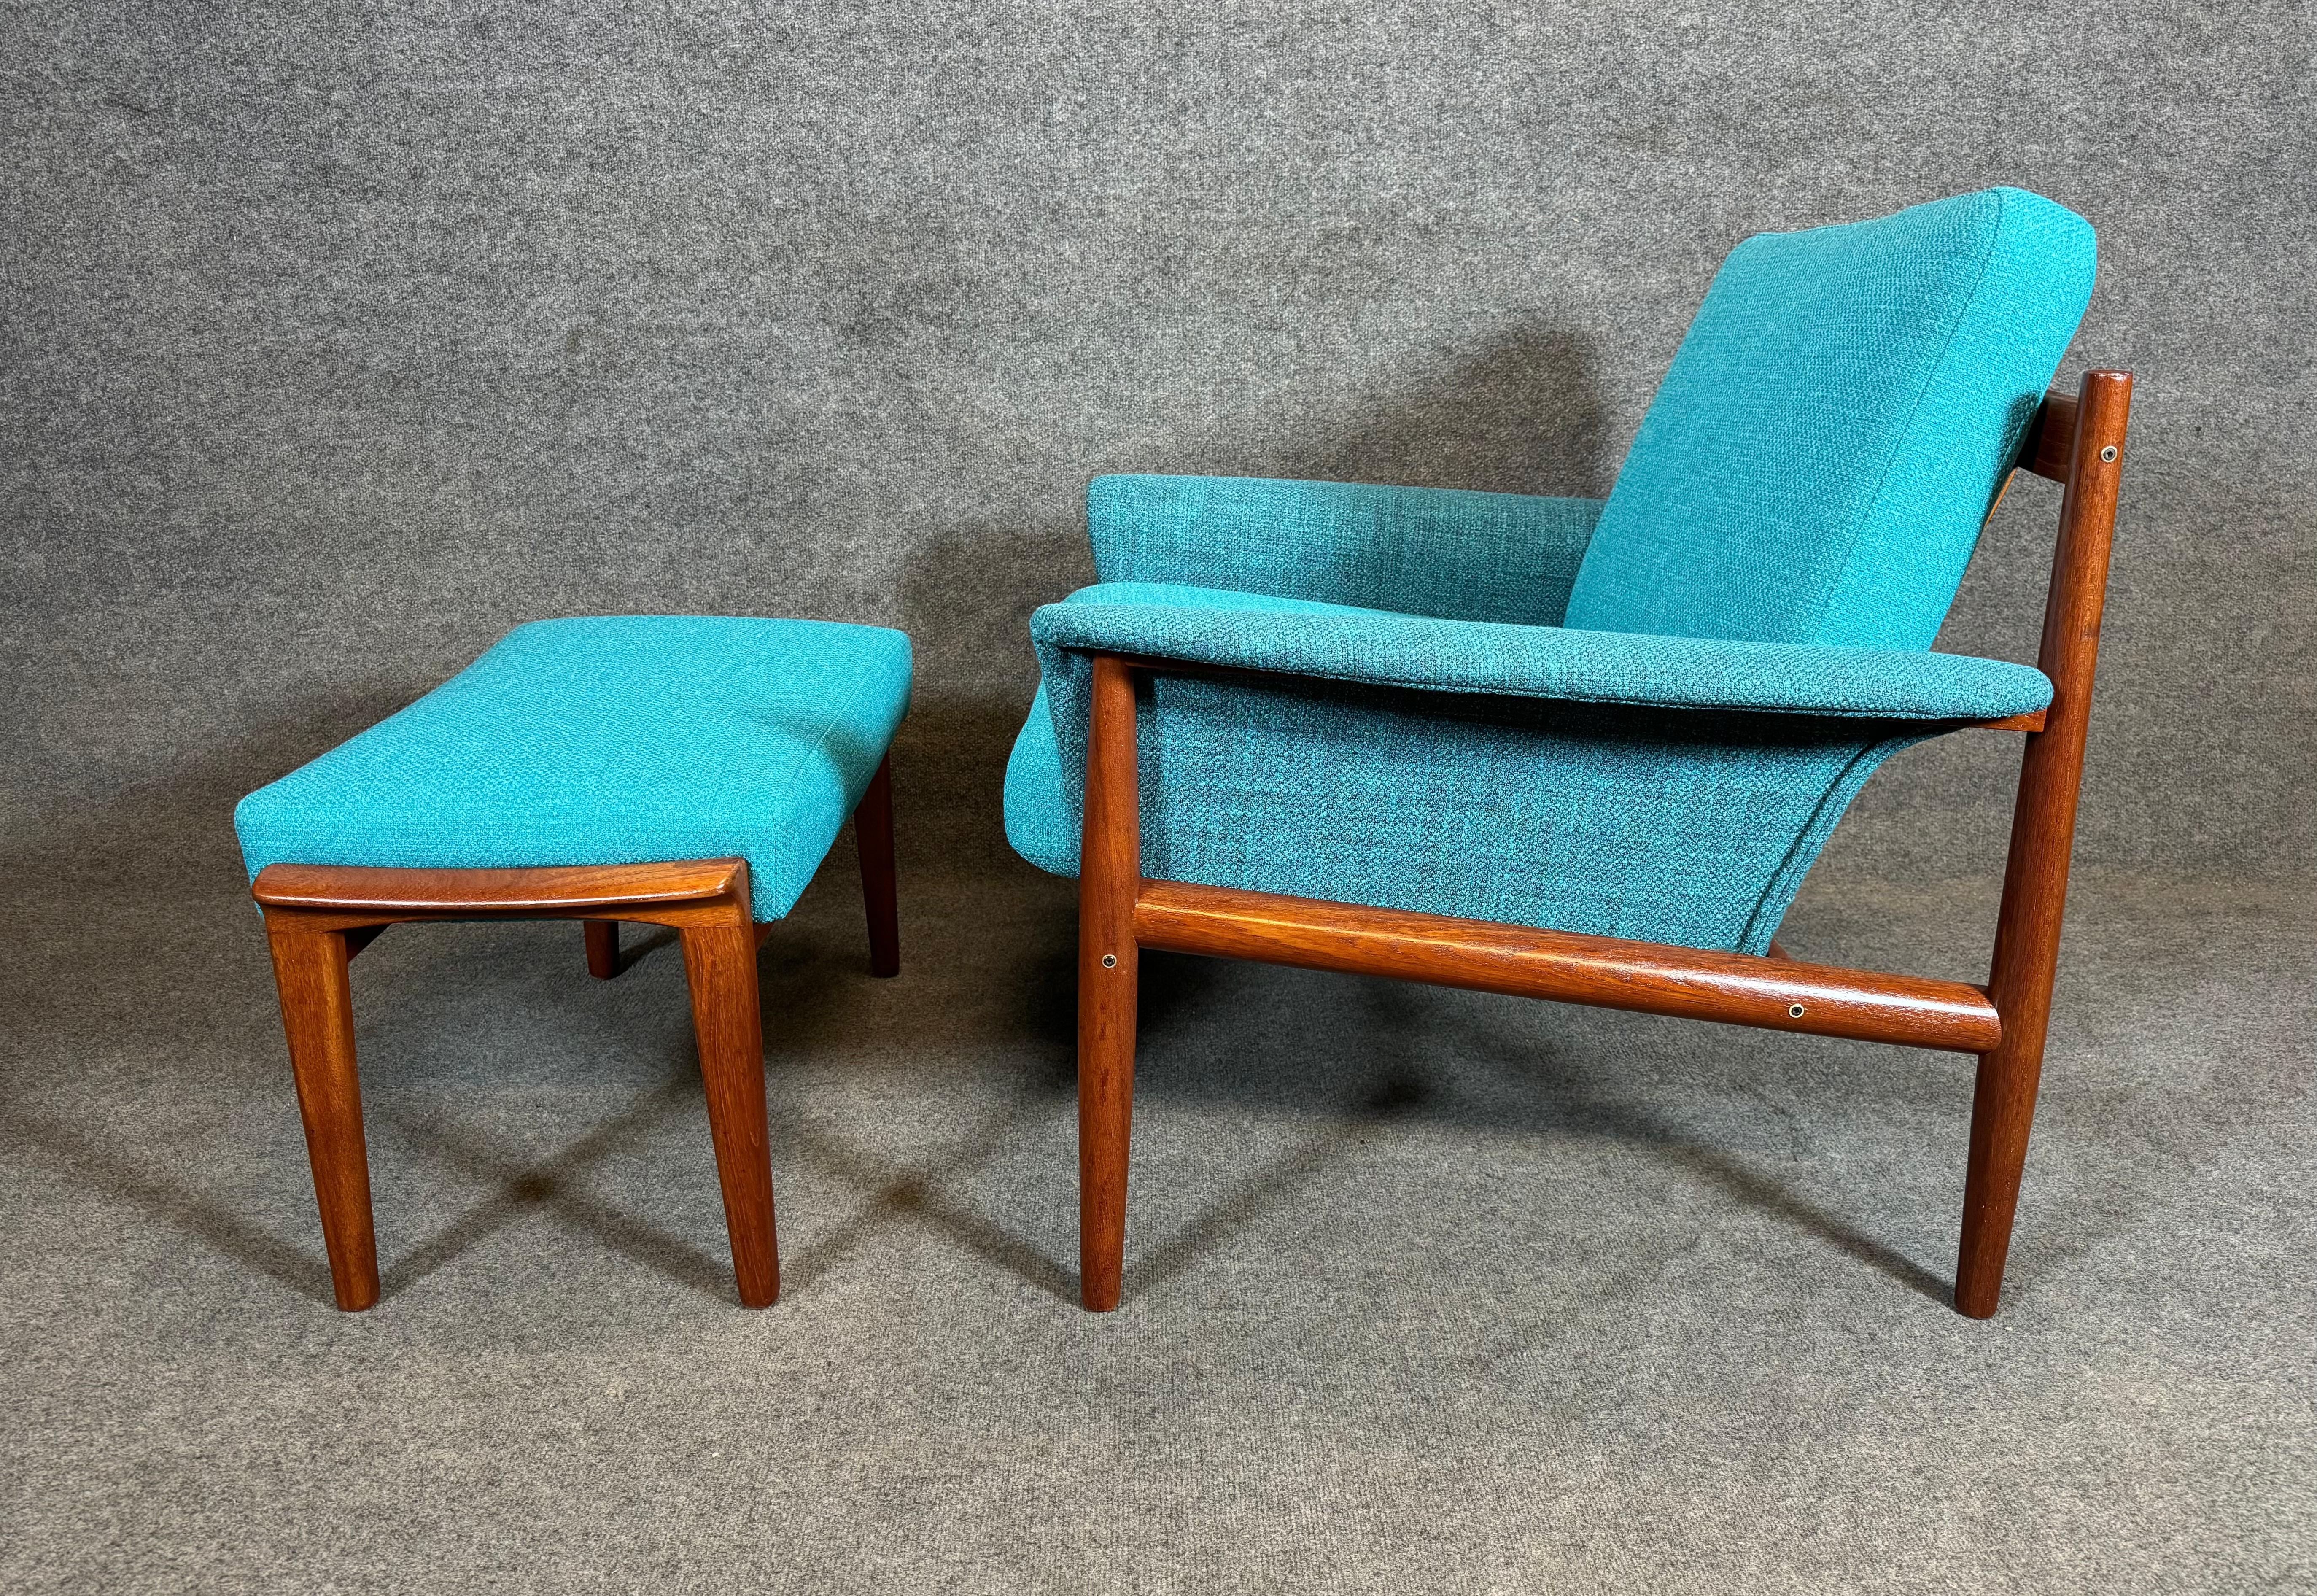 Hier ist ein schöner, moderner skandinavischer Sessel aus massivem Teakholz, entworfen von Grete Jalk und hergestellt von France & Son in Dänemark in den 1960er Jahren, gepaart mit einem zeitgemäßen Ottomanen, hergestellt in Schweden von Broderna